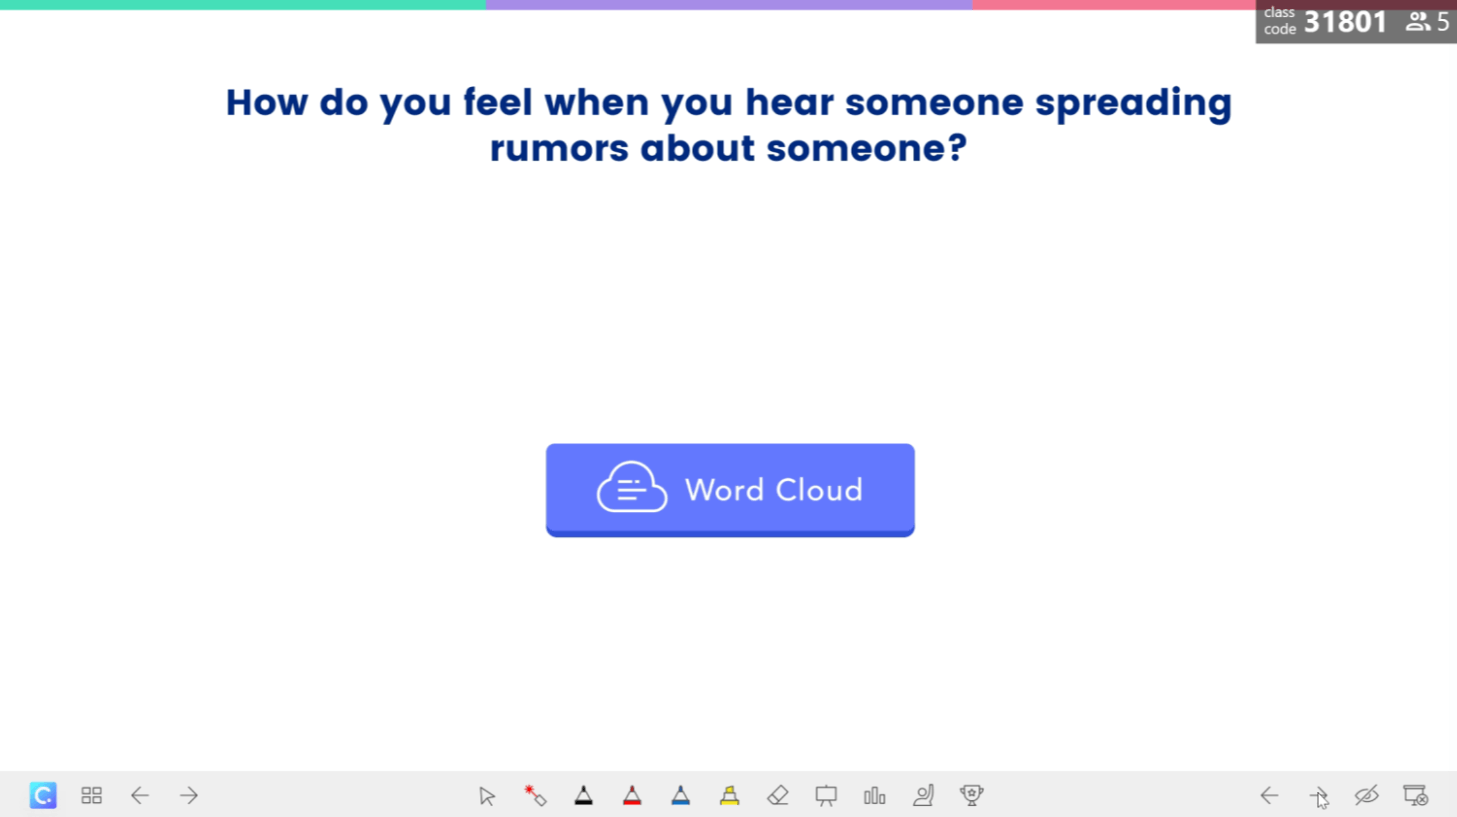 Aktiviti Word Cloud: Apakah perasaan anda apabila seseorang menyebarkan khabar angin?